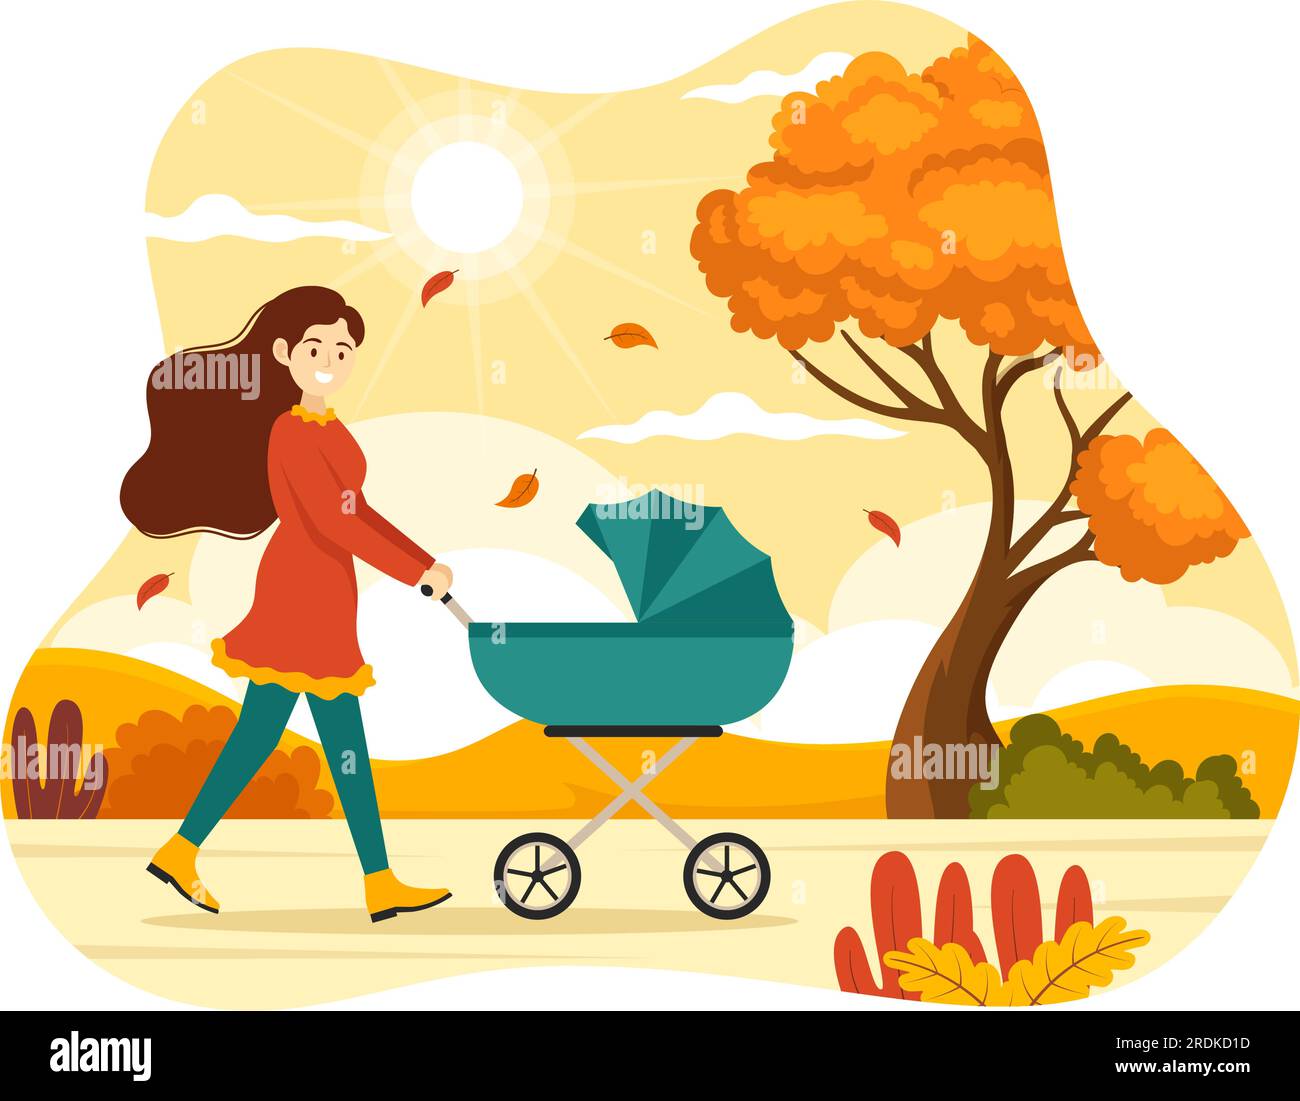 Herbstaktivitätsvektor-Illustration mit Aktivitäten wie „ein Mensch“ fährt Fahrrad, liest Buch, entspannt oder joggt in den Herbstvorlagen für den Stadtpark Stock Vektor